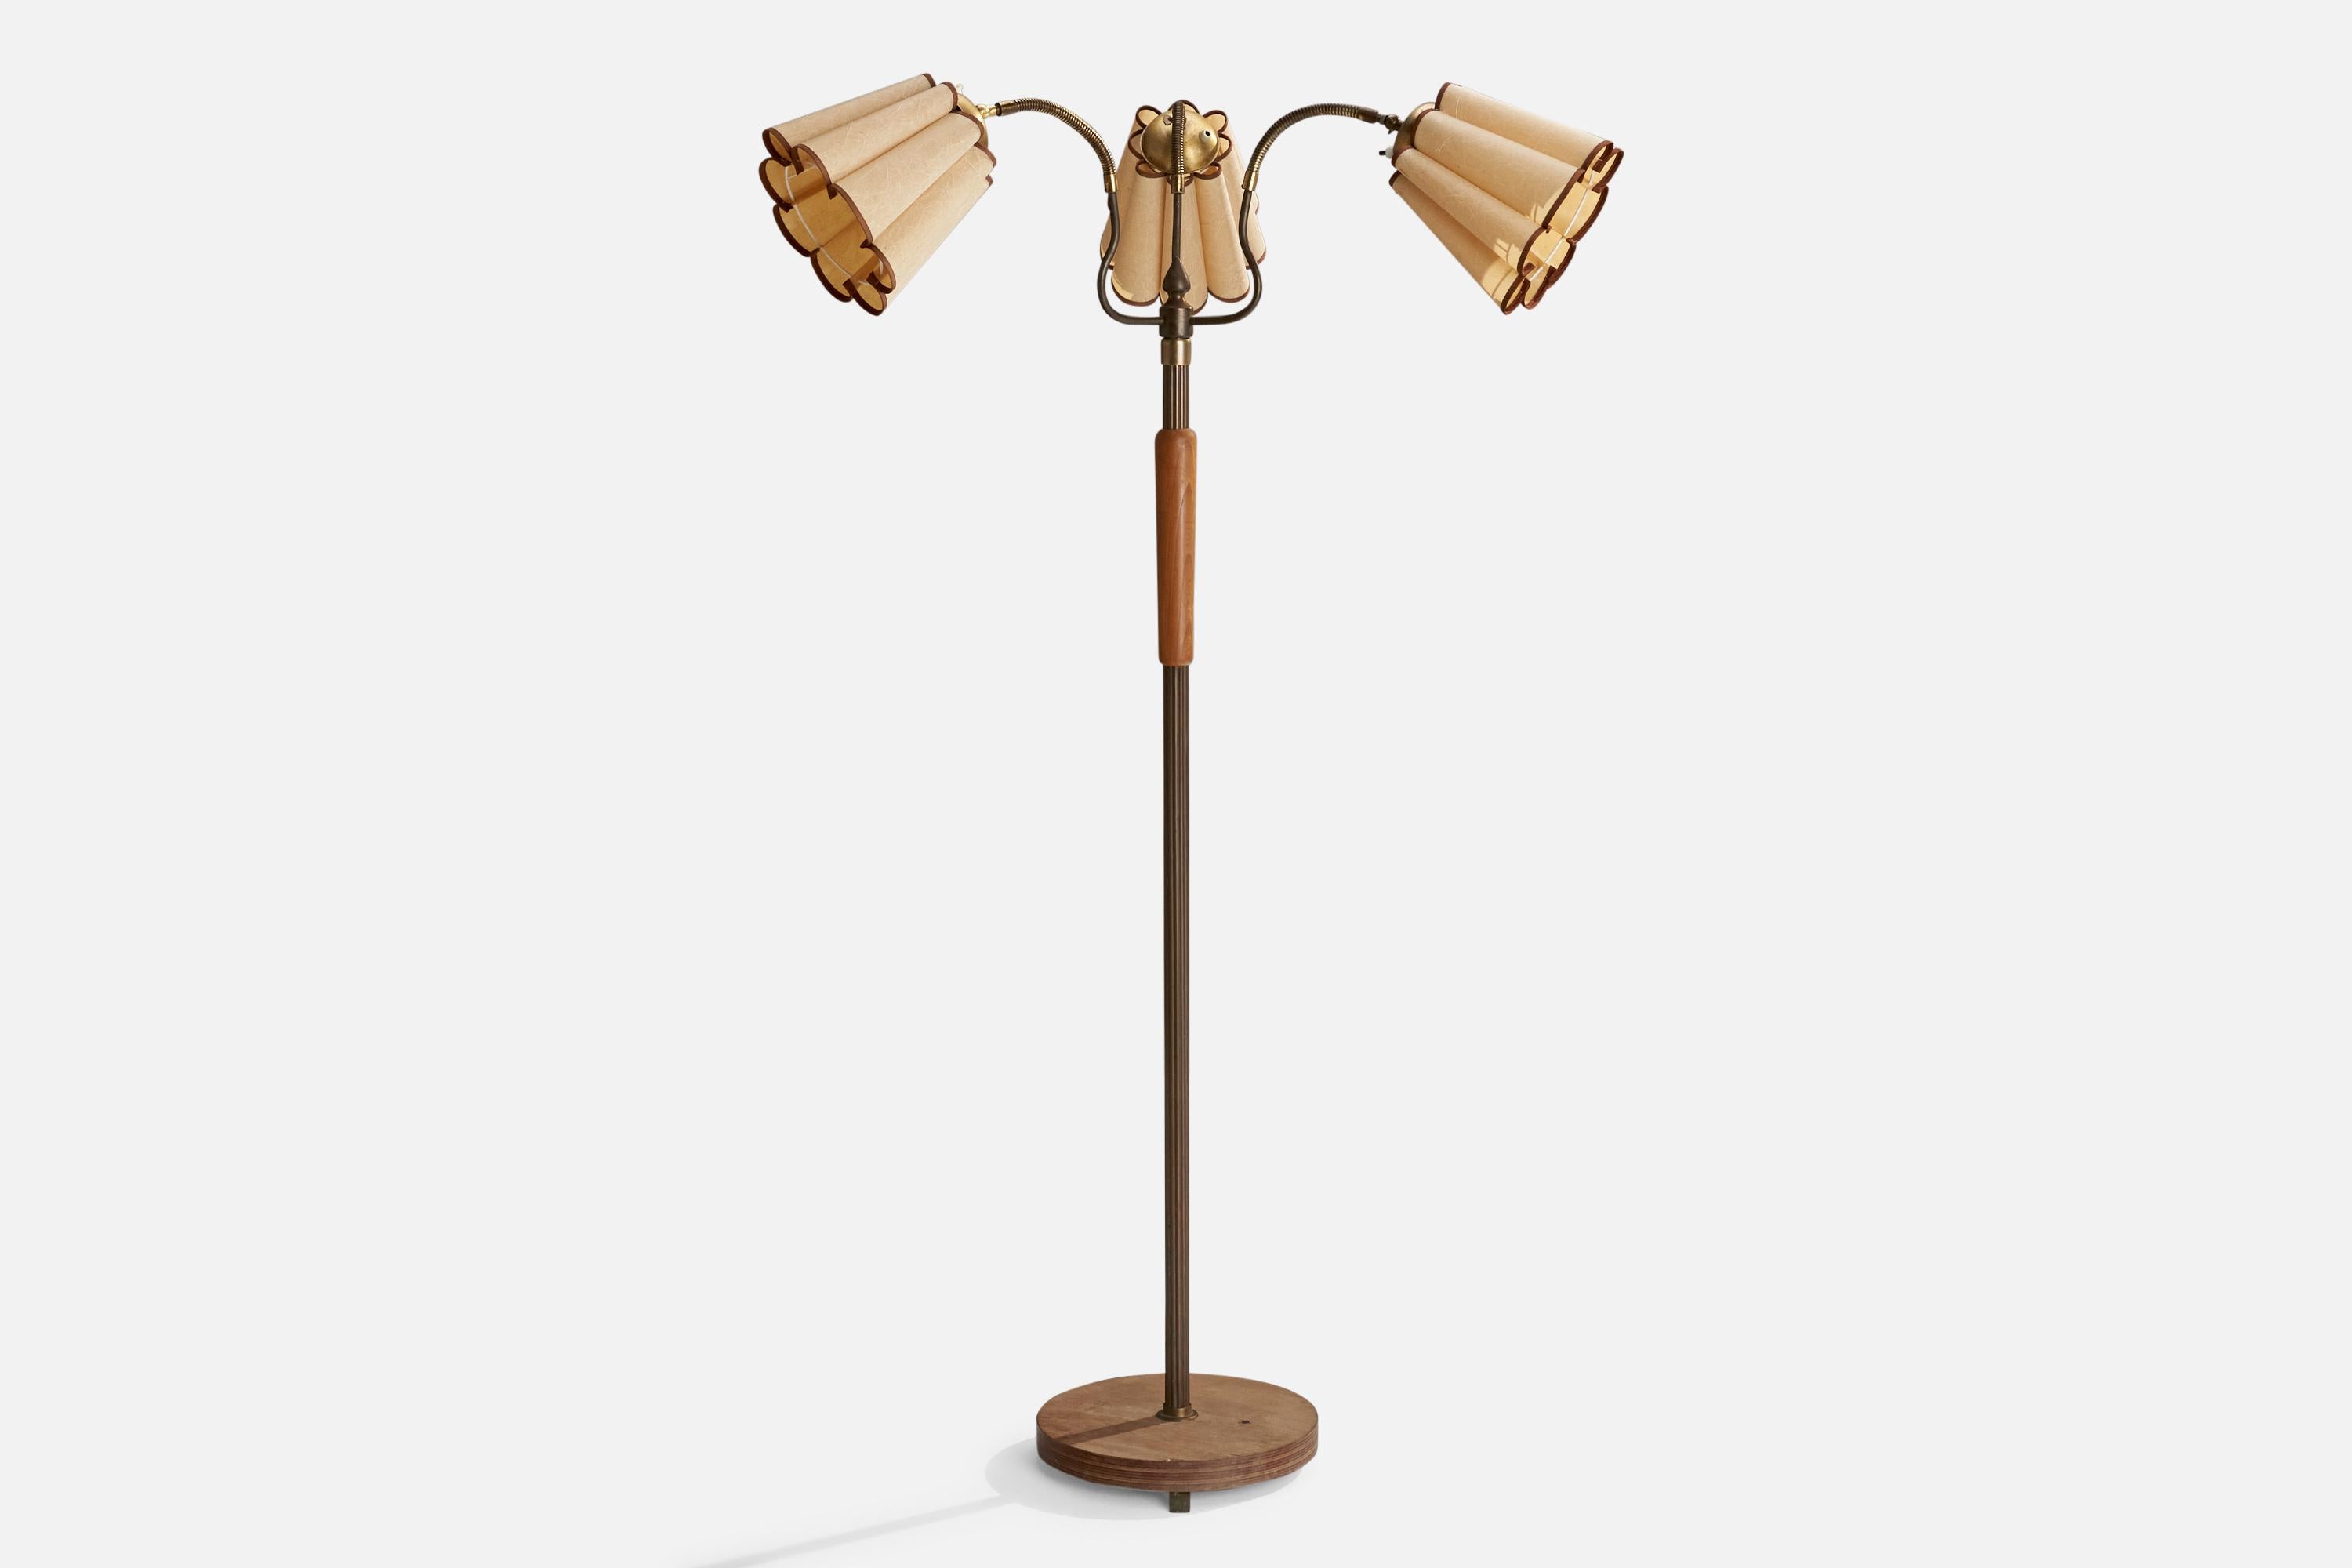 Lampadaire réglable à trois bras en laiton, orme et papier, conçu et produit en Suède, années 1940.

Dimensions variables

Dimensions globales (pouces) : 63